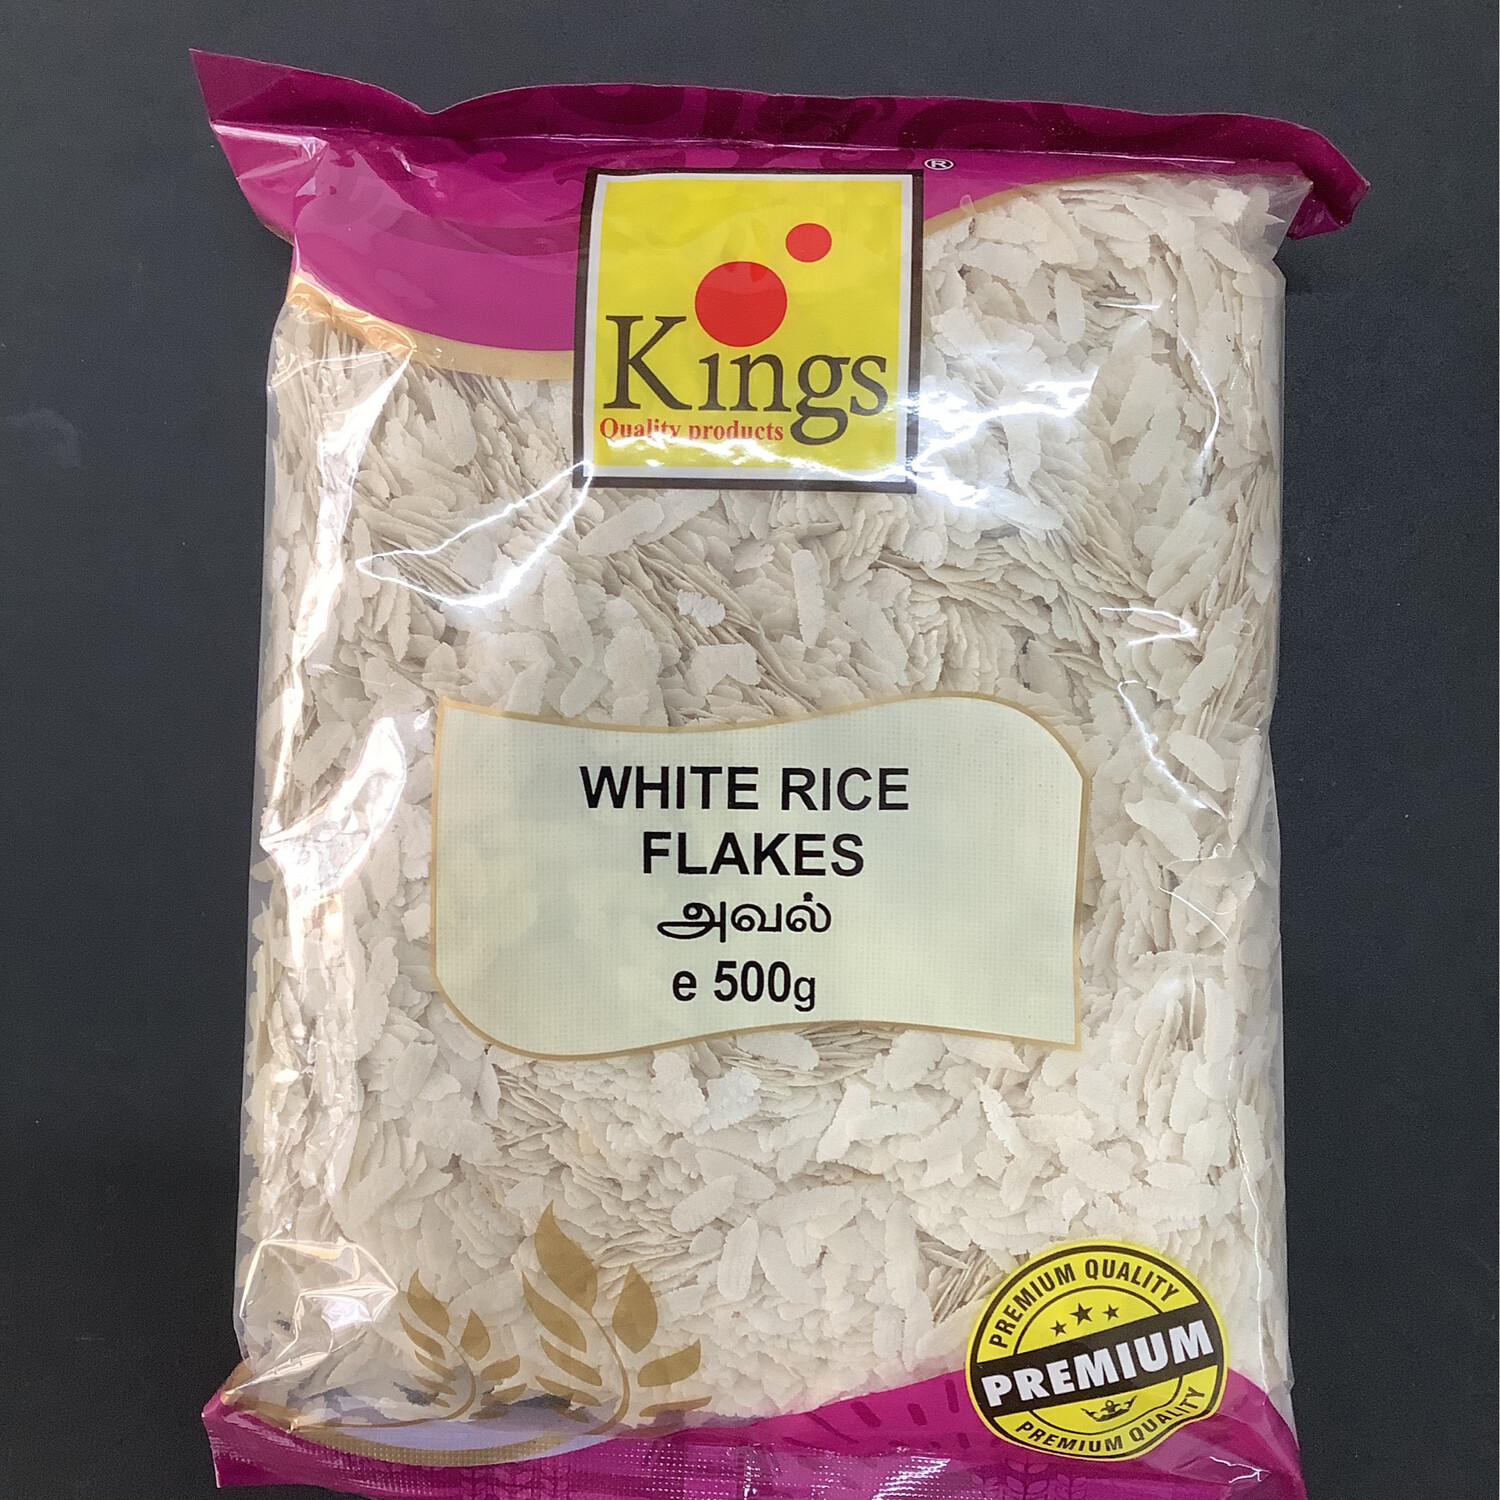 Kings White Rice Flakes 500g